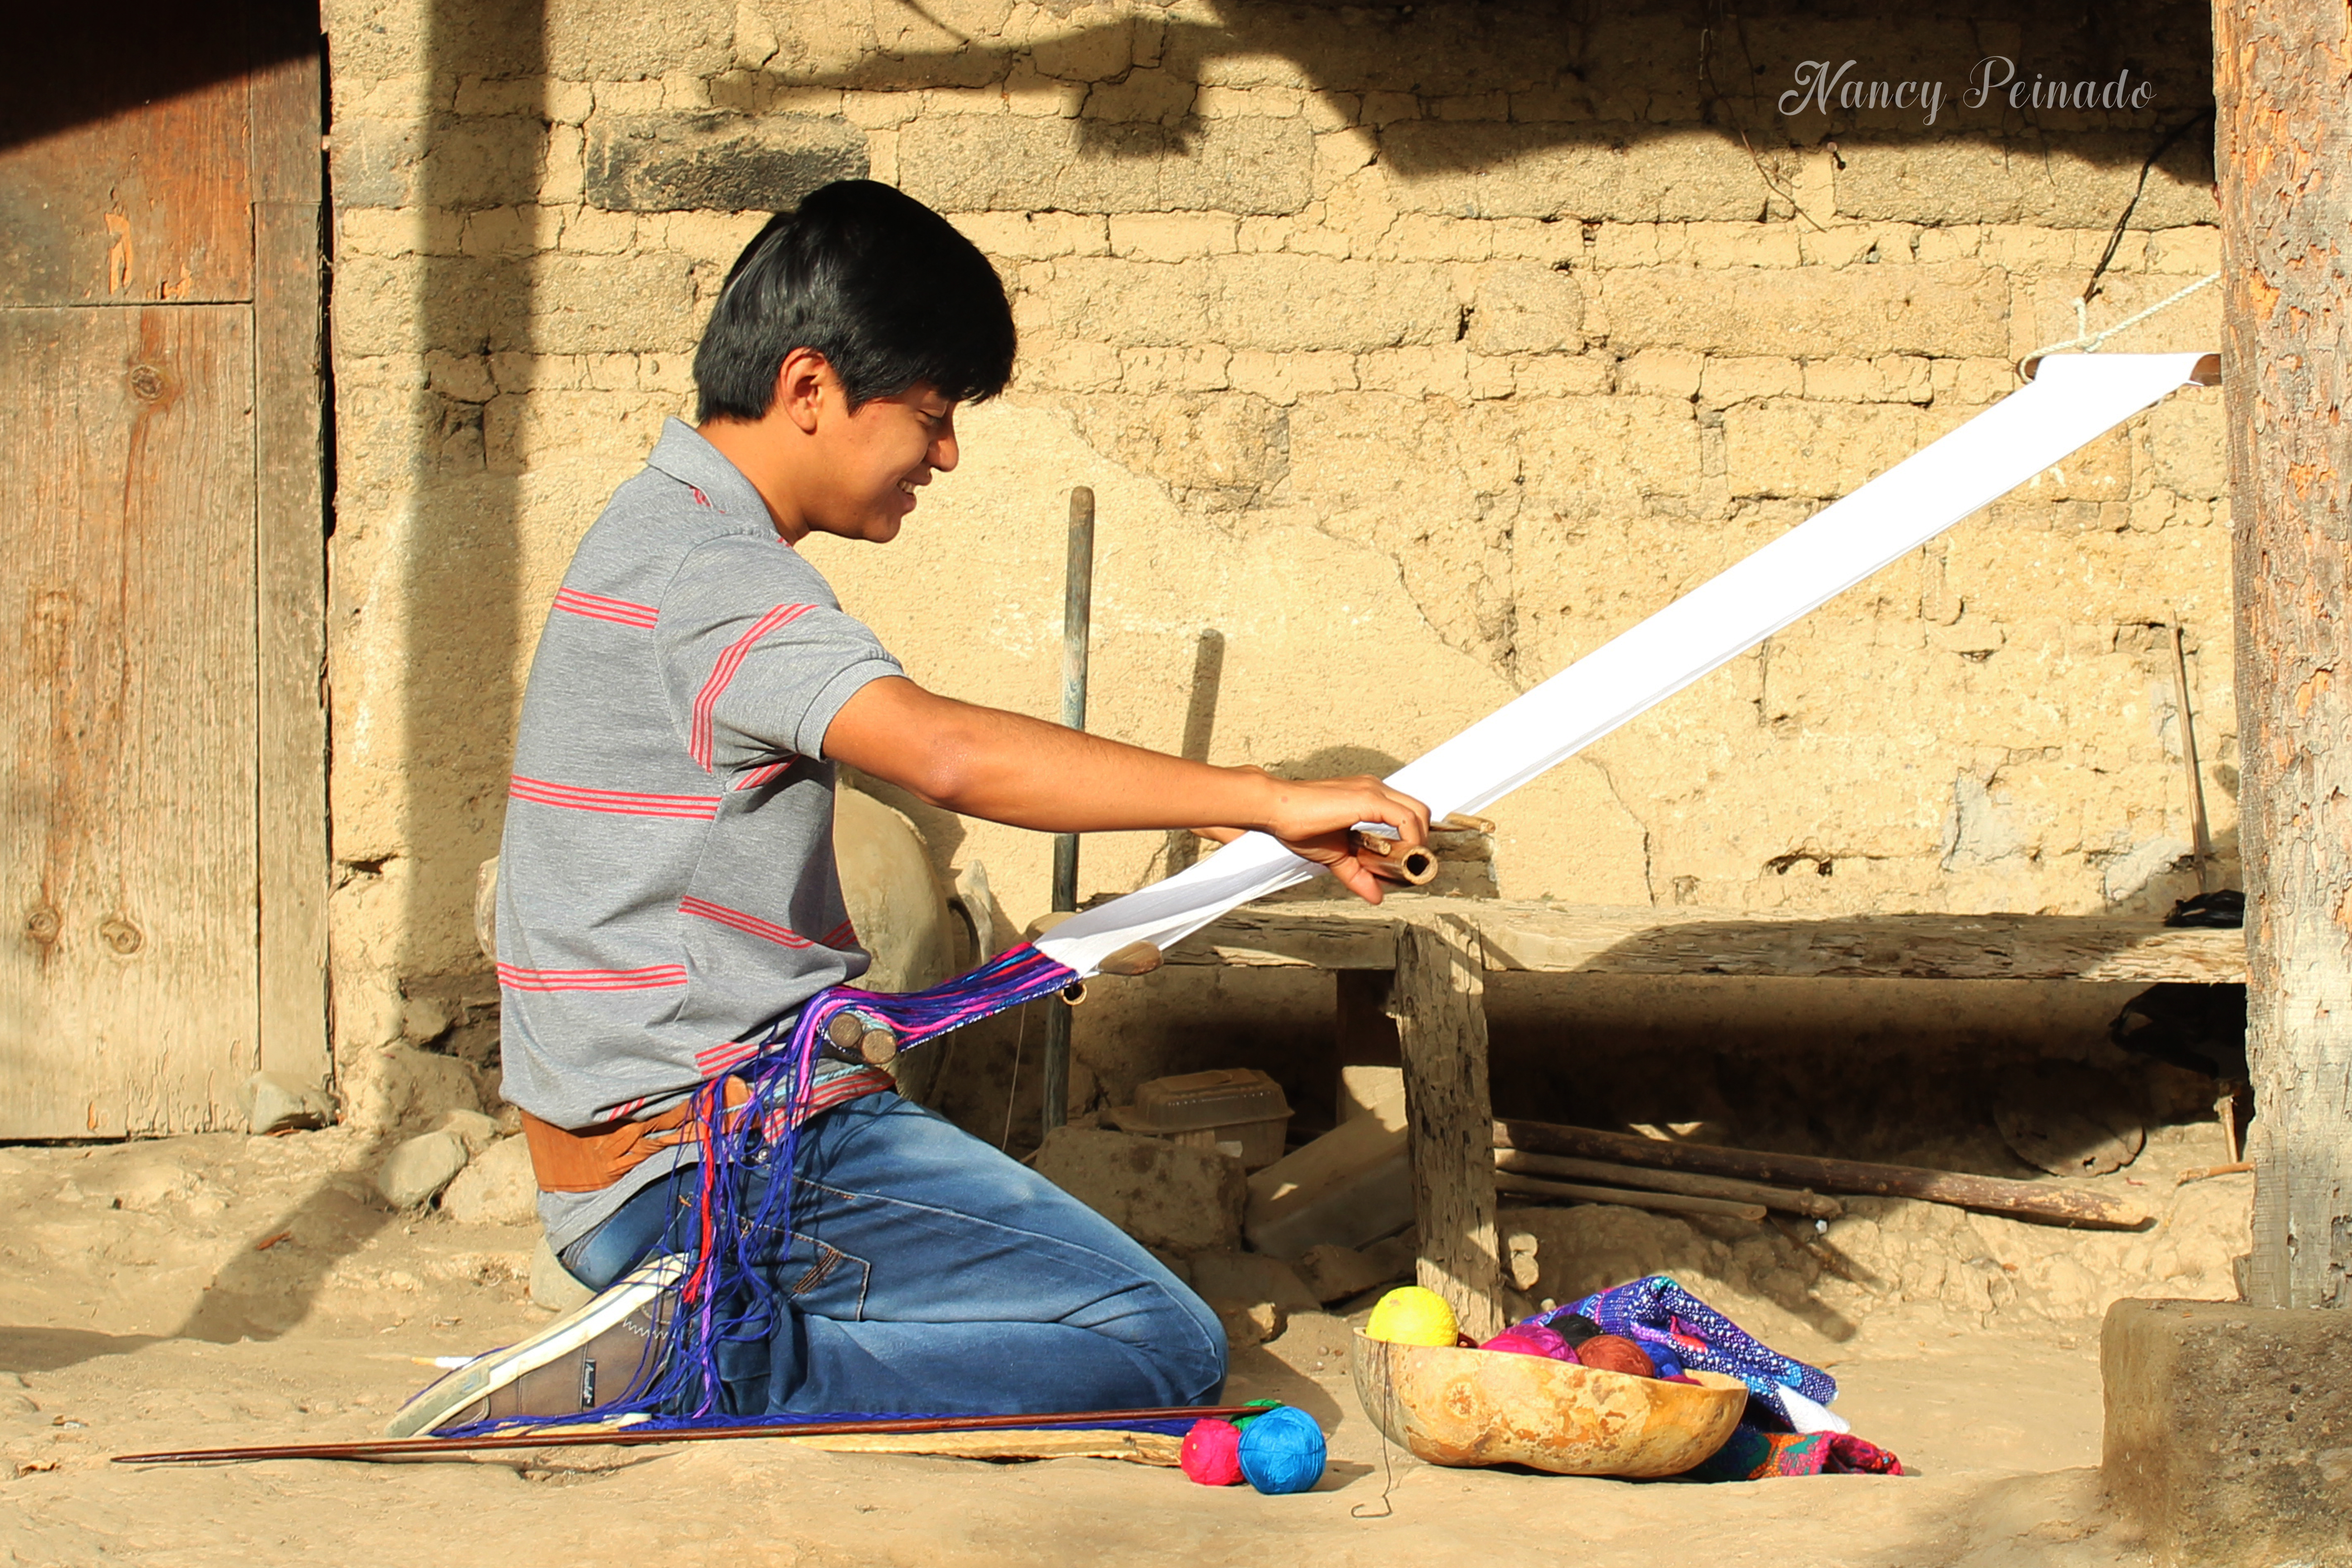 Peinado es tejedor desde los 15 años en su comunidad. (Foto Prensa Libre: Cortesía Nancy Peinado)